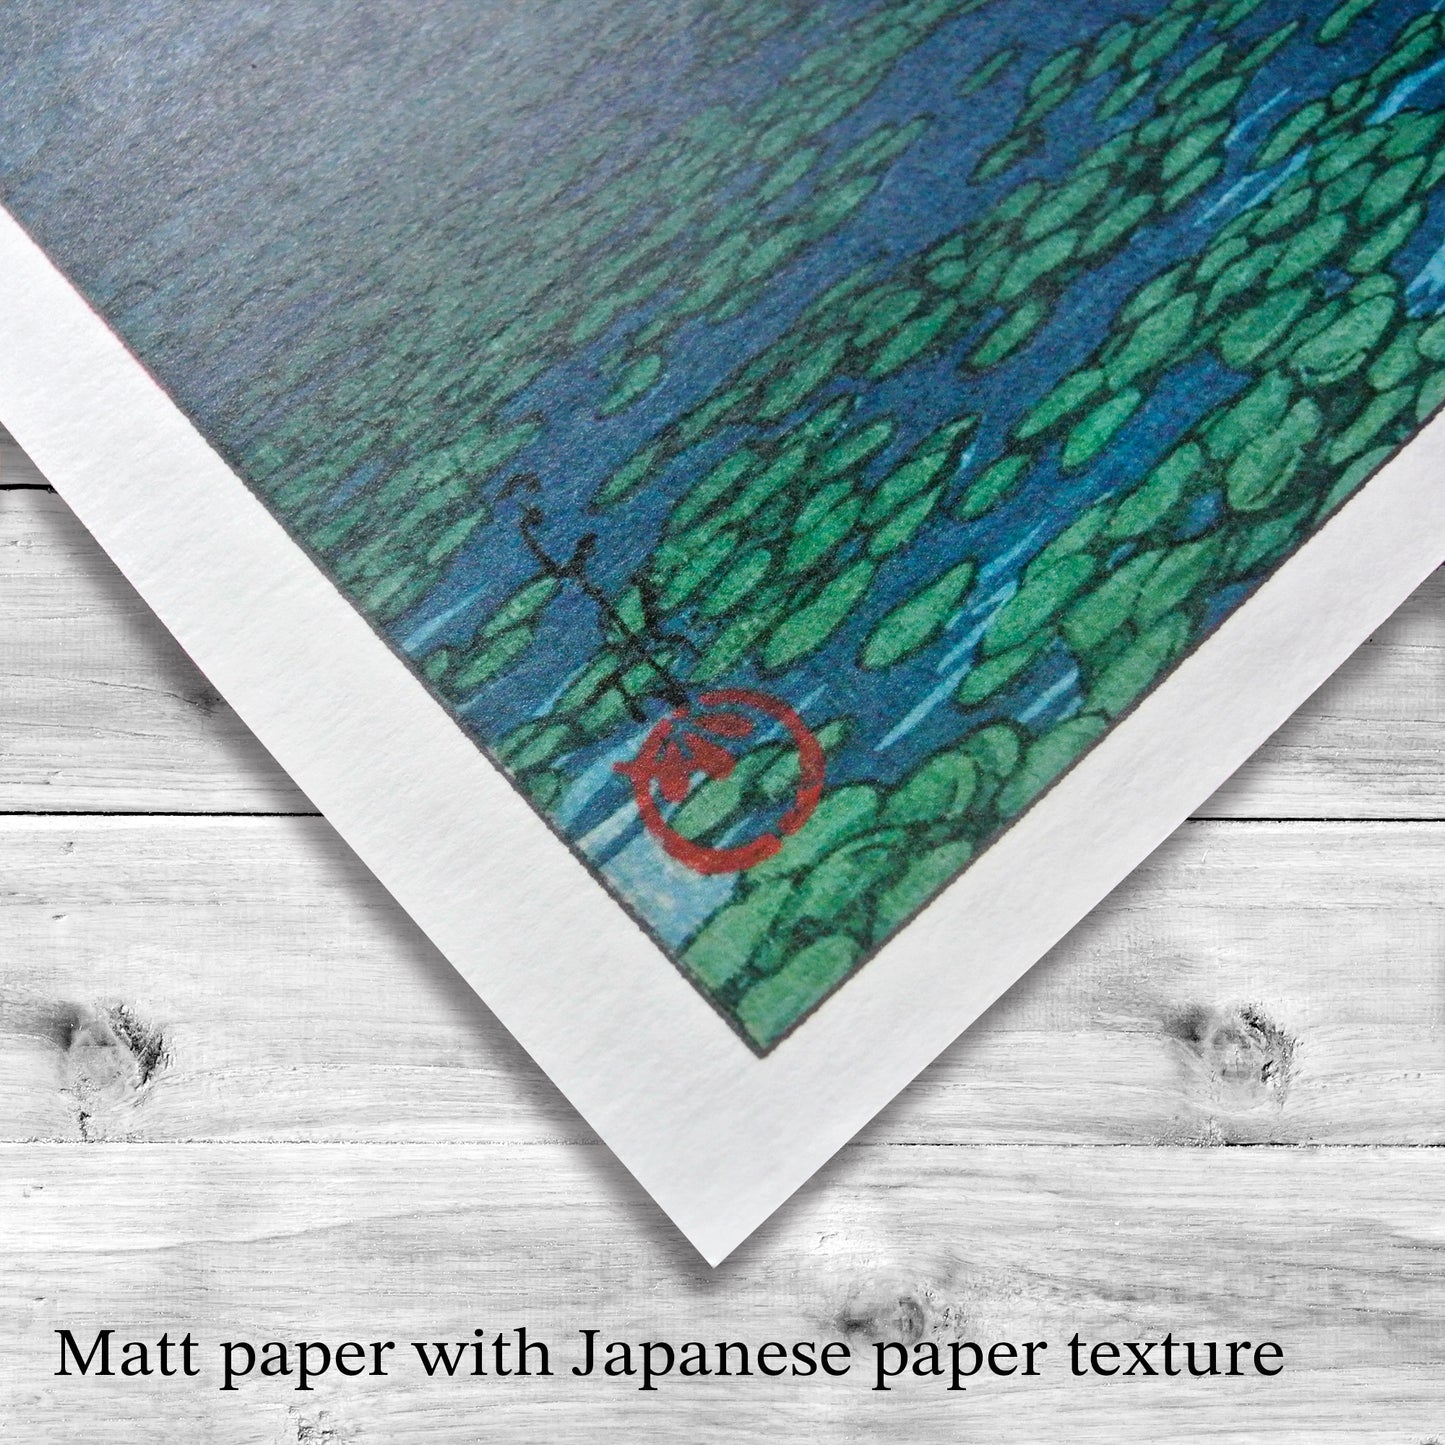 set of 2 - Kawase Hasui ,Japanese Art, 12×18inches (11×17＋margin), Made in Japan,Woodblock Print, Ukiyo-e, Shipping free,002